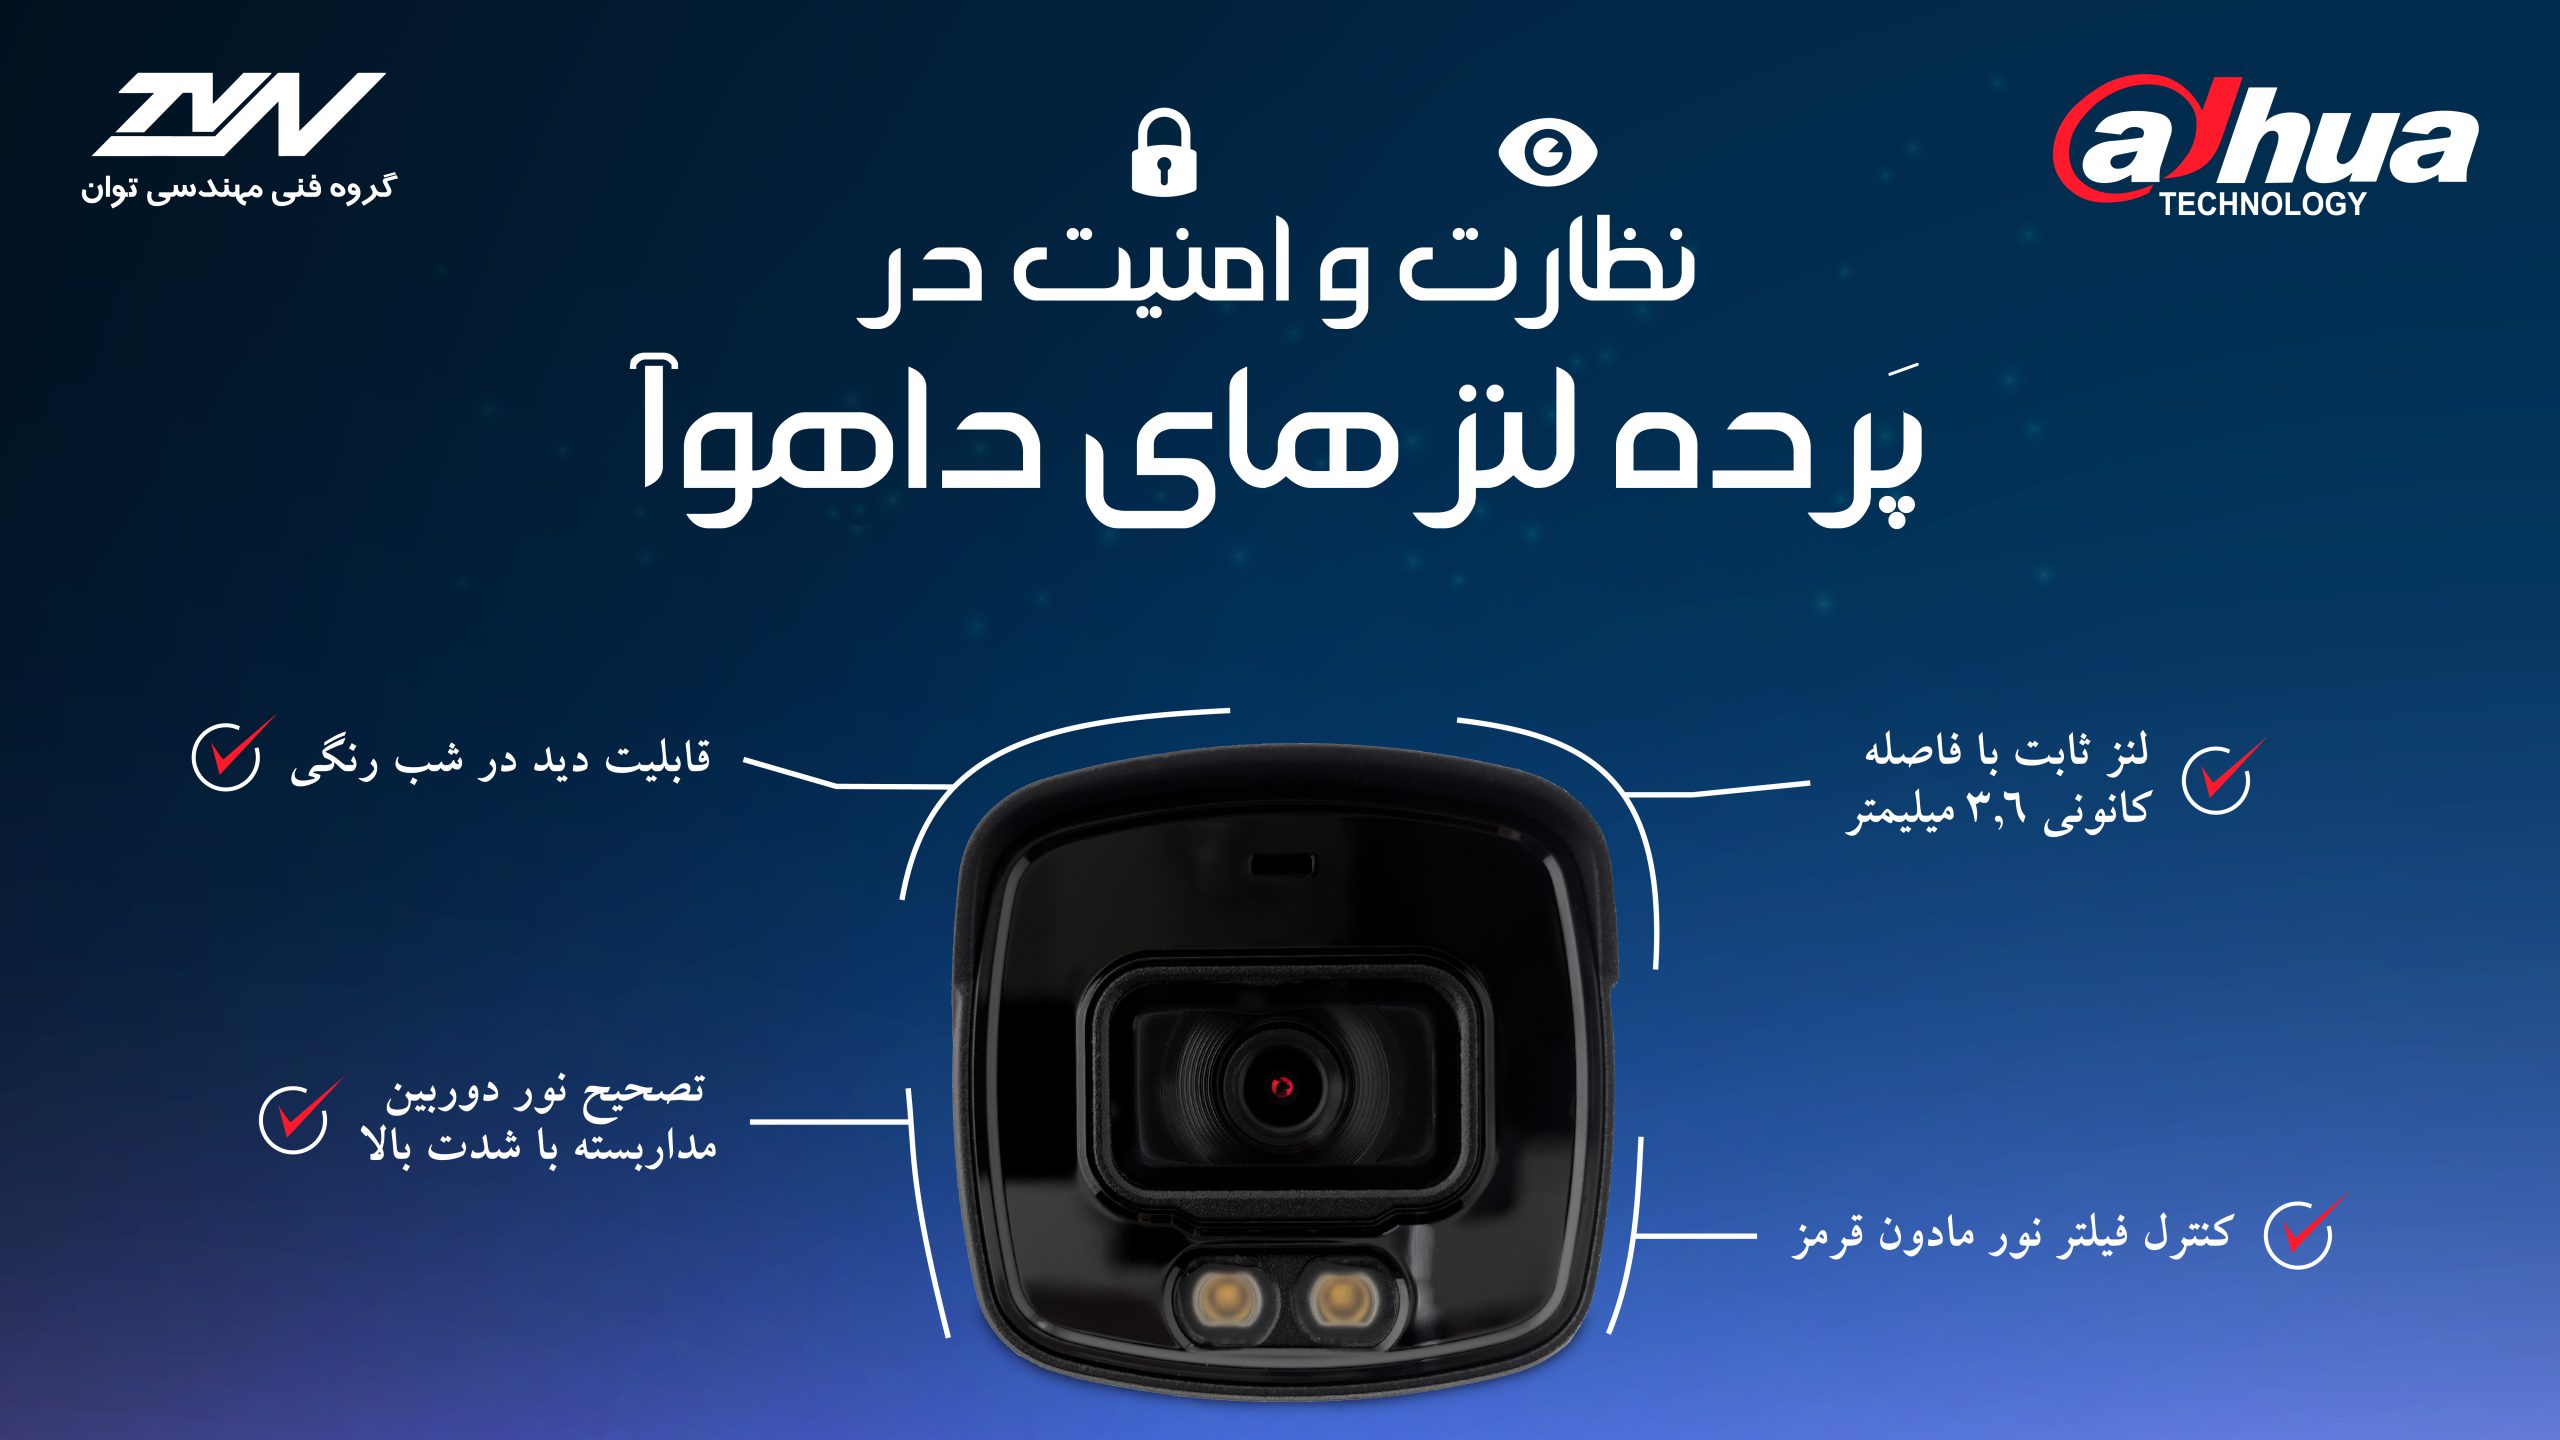 محصولات امنیتی و نظارتی داهوا (Dahua) - دوربین مداربسته داهوا (Dahua) - دستگاه XVR داهوا (dahua)